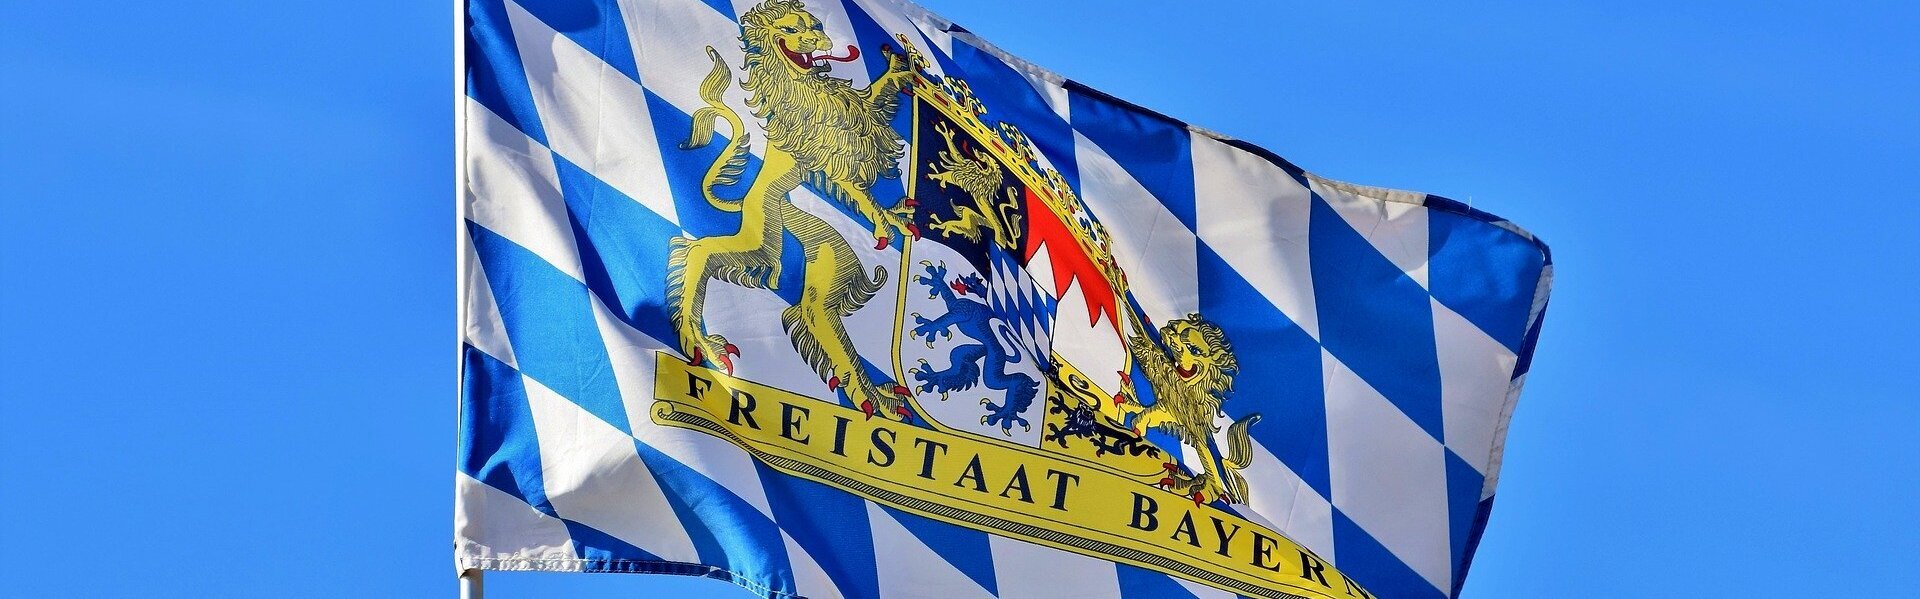 DAs Bild zeigt die Flagge Bayerns